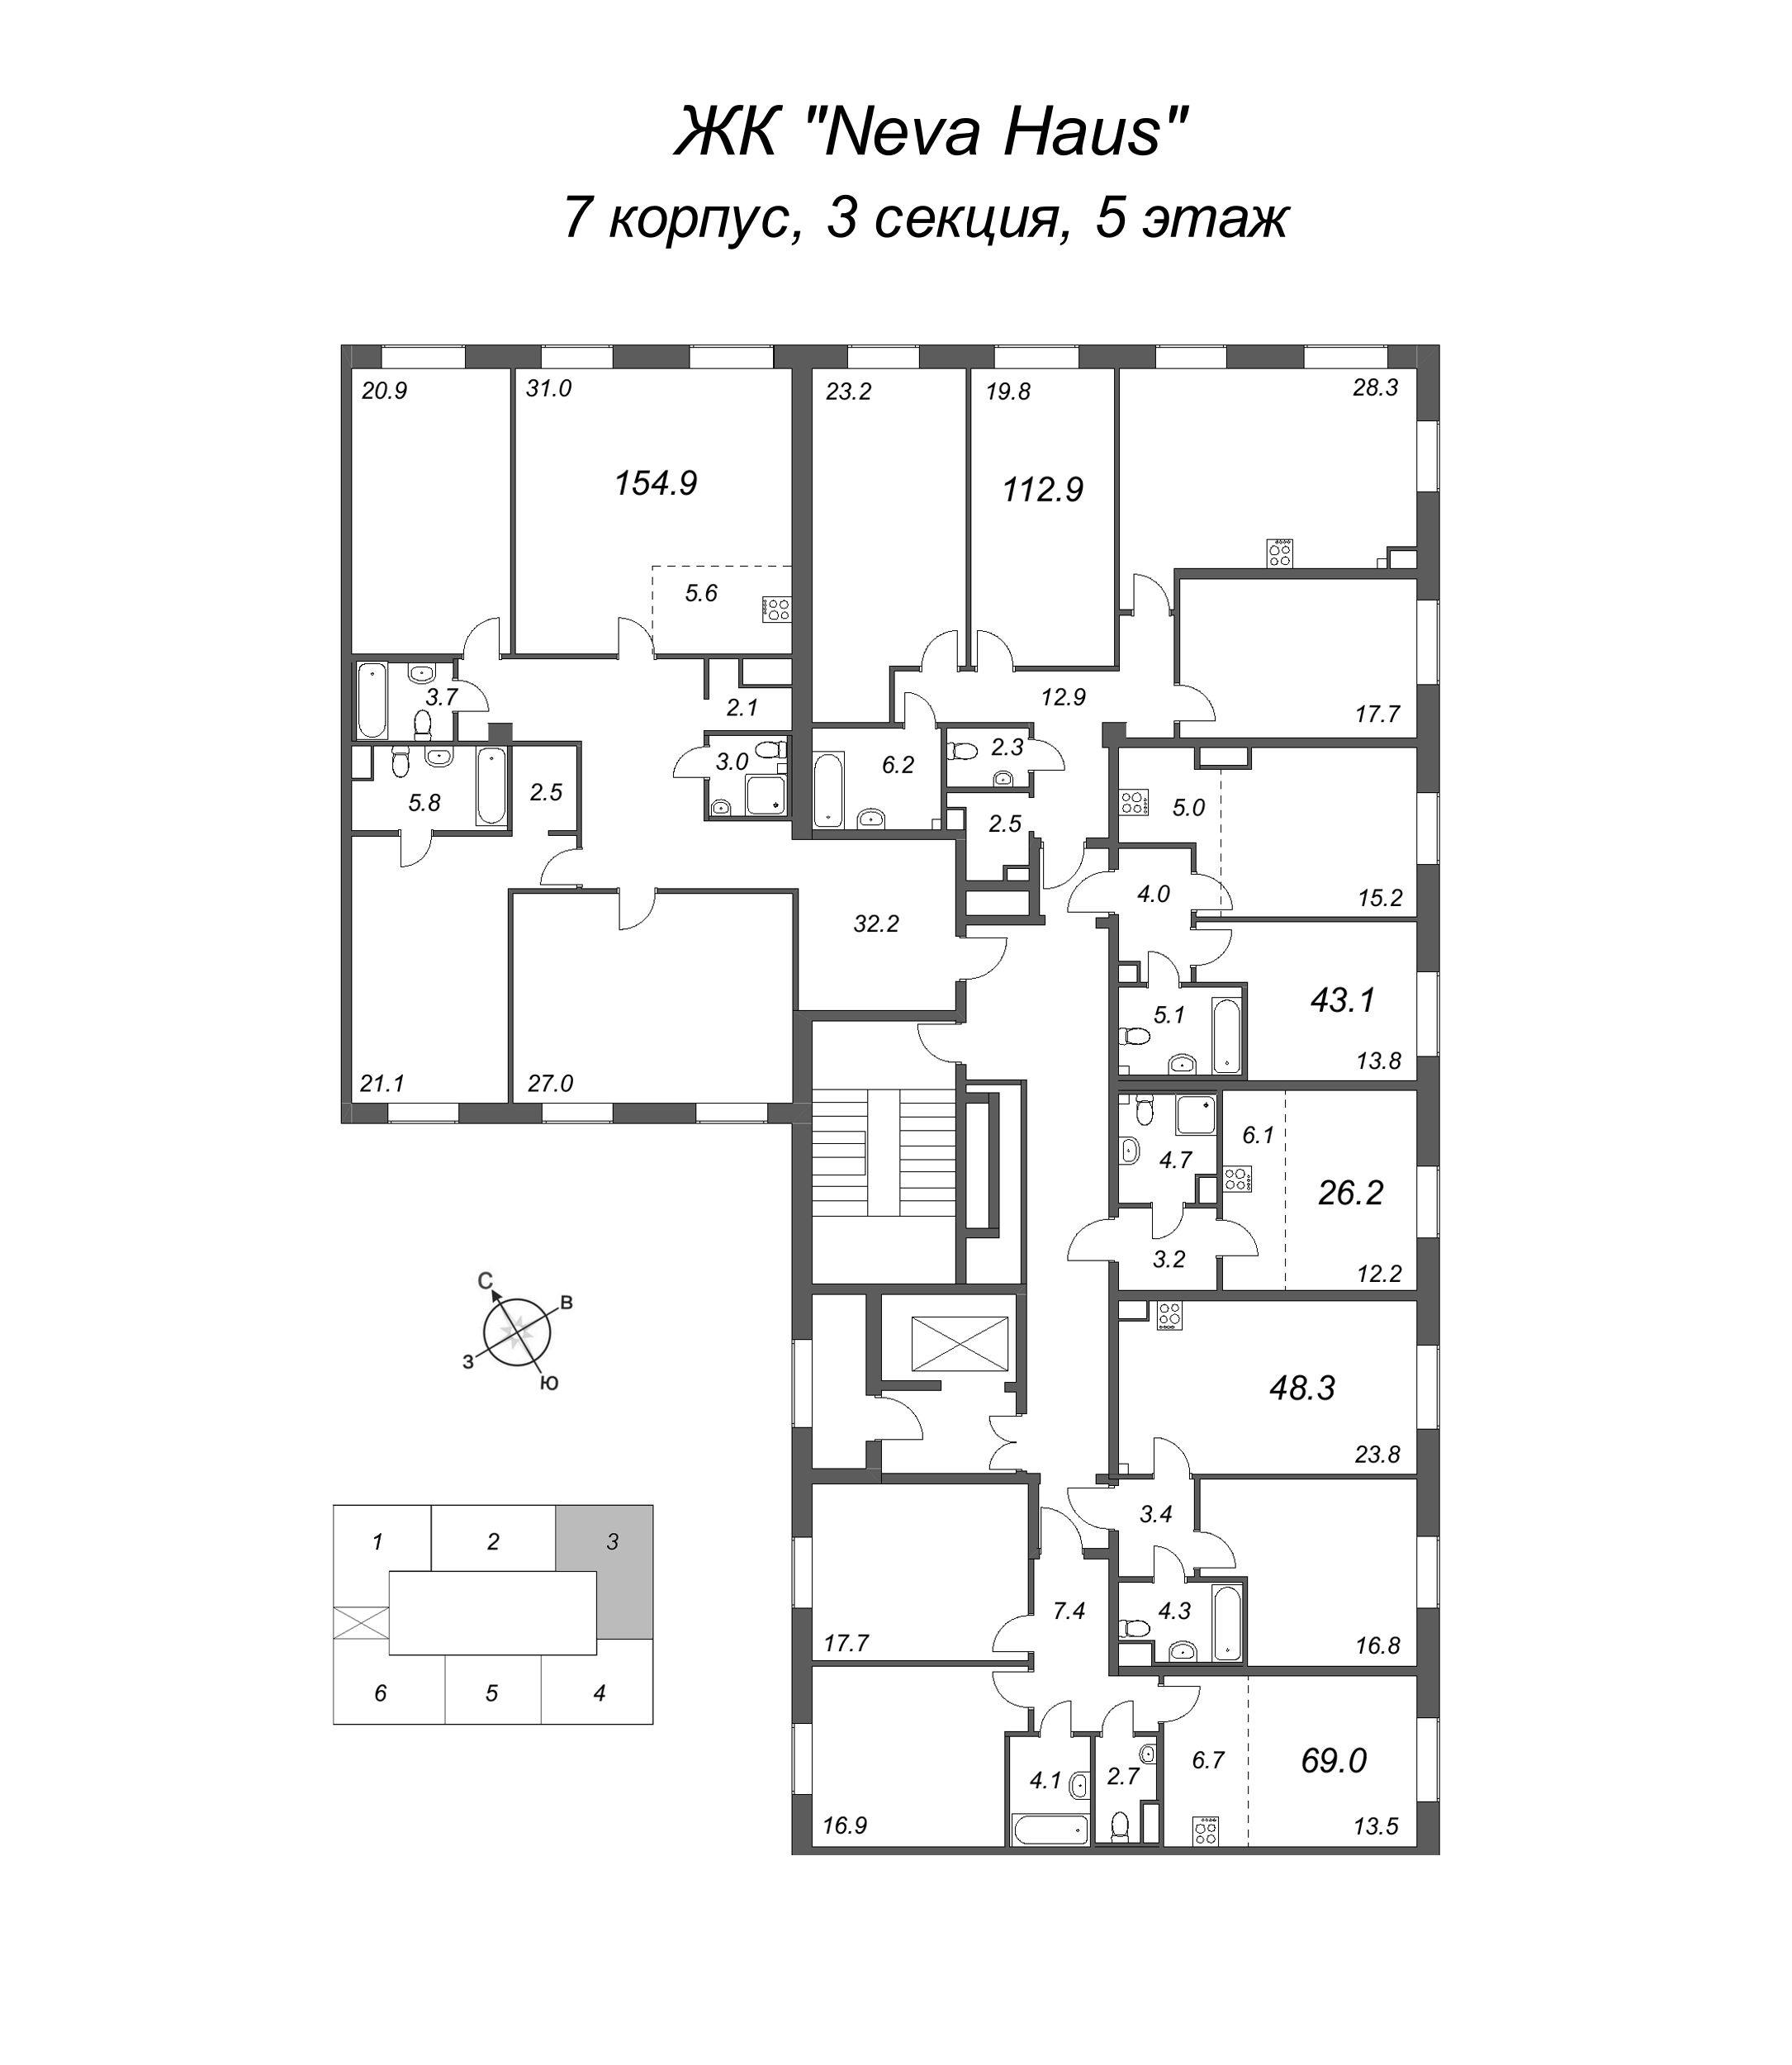 4-комнатная (Евро) квартира, 155.7 м² в ЖК "Neva Haus" - планировка этажа